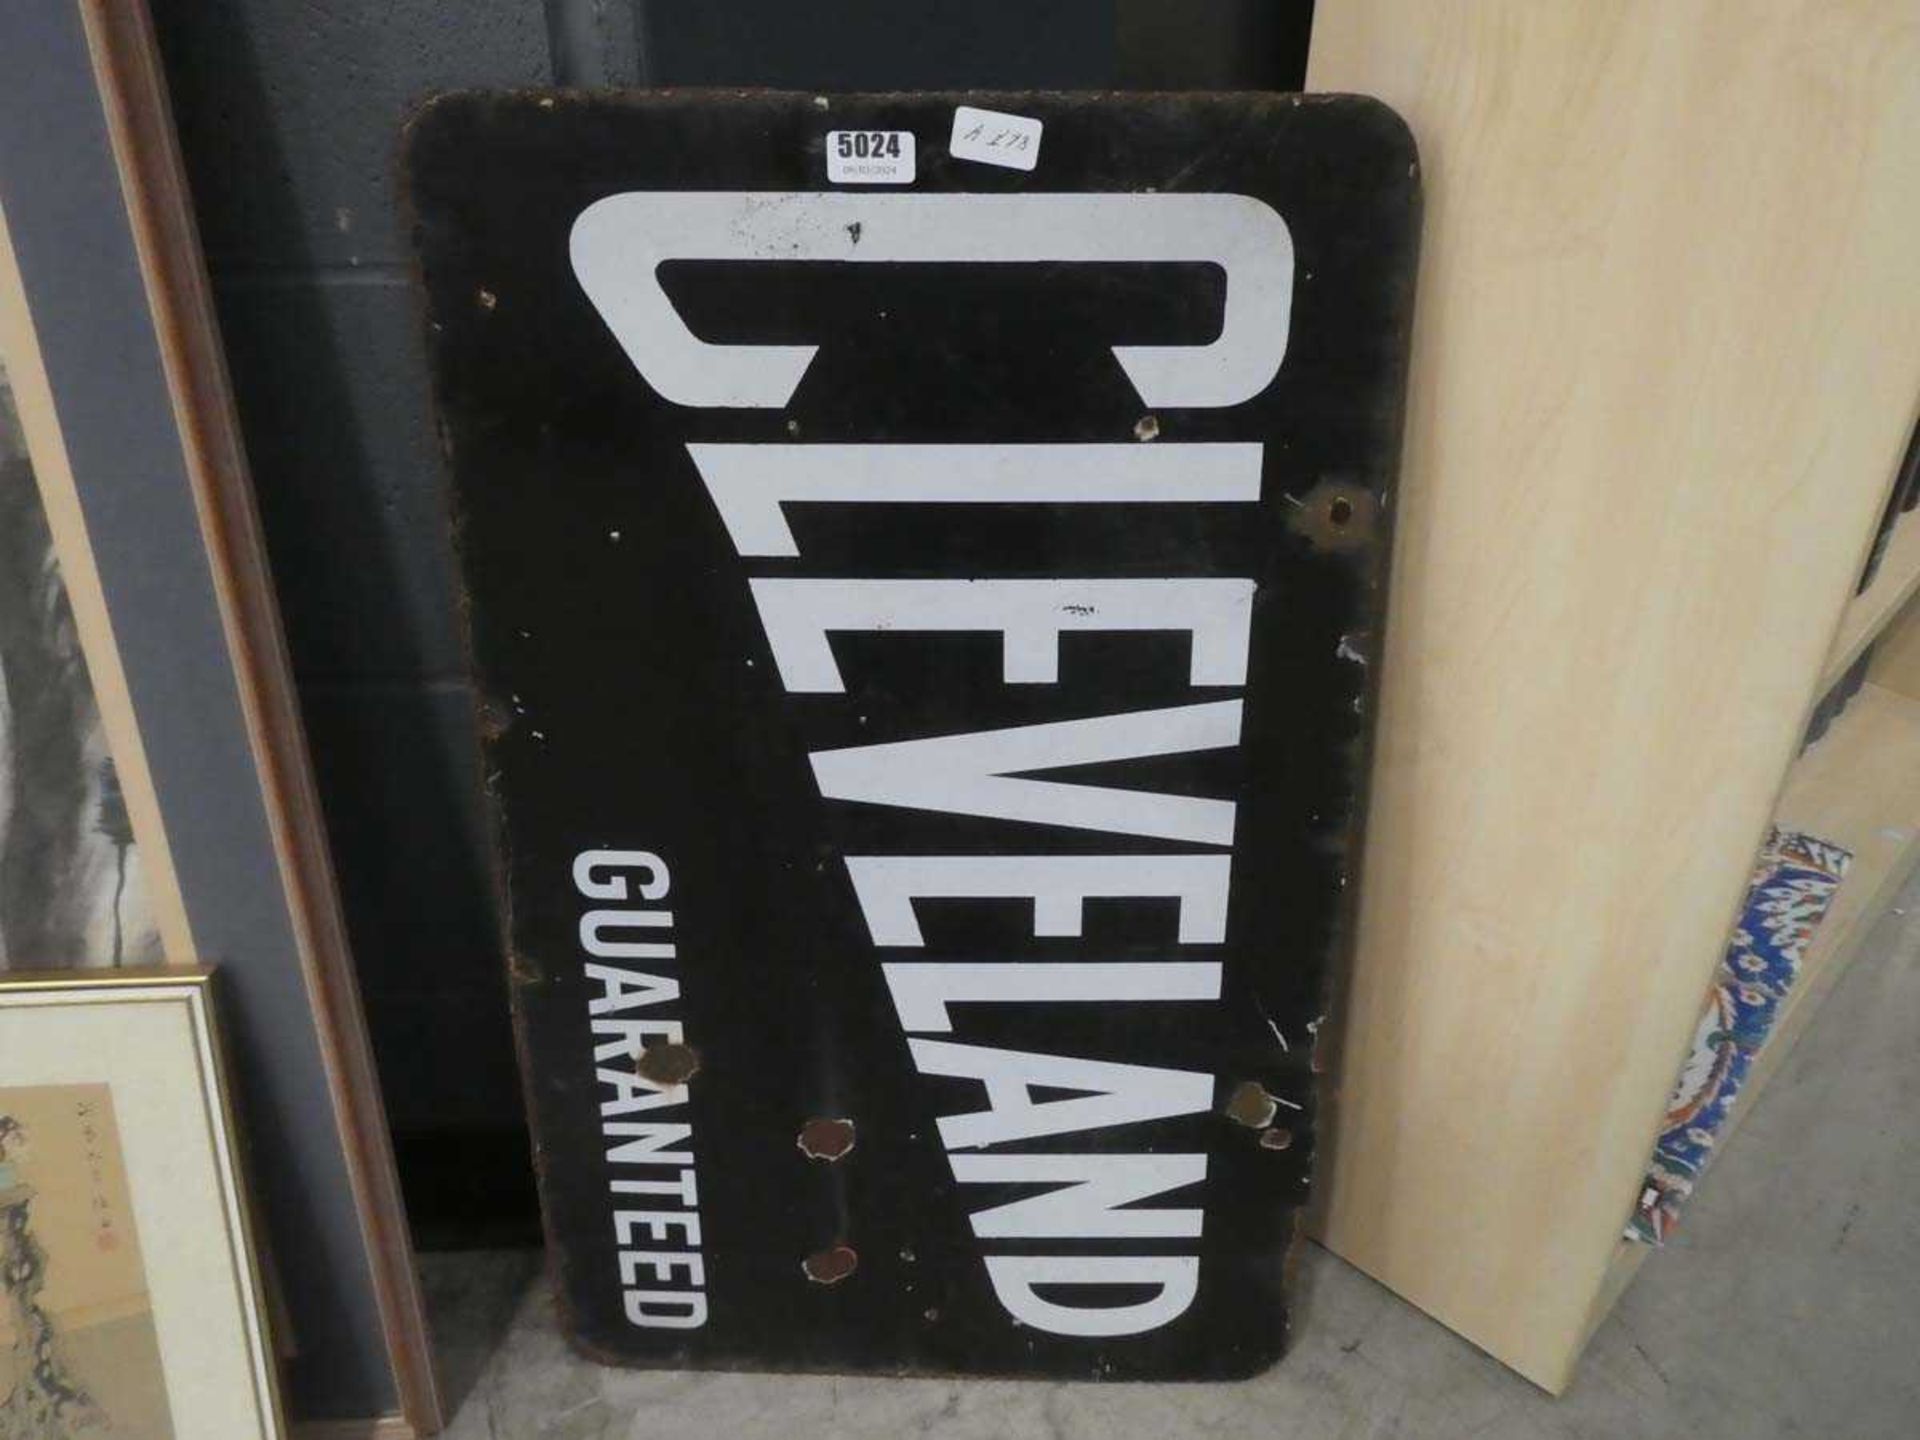 Enamelled Cleveland sign